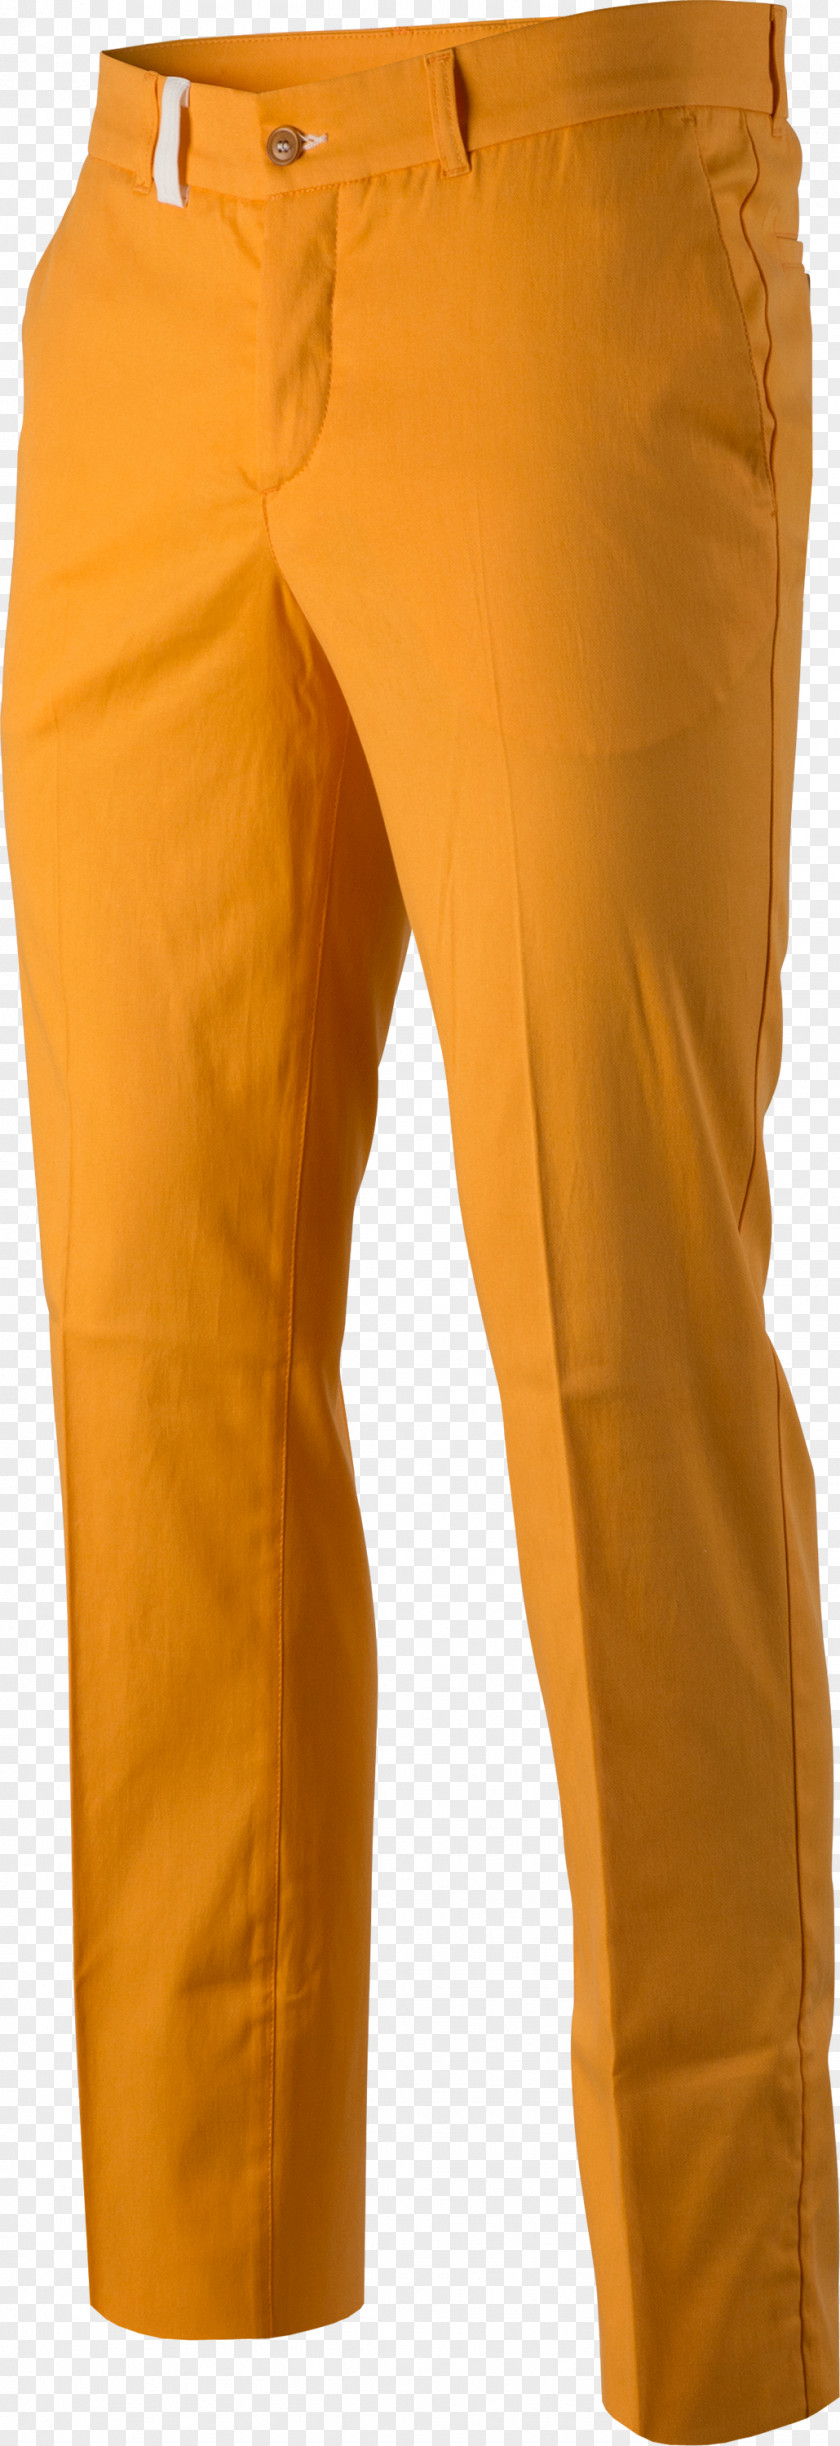 Lime Pants Yellow Khaki Jeans PNG